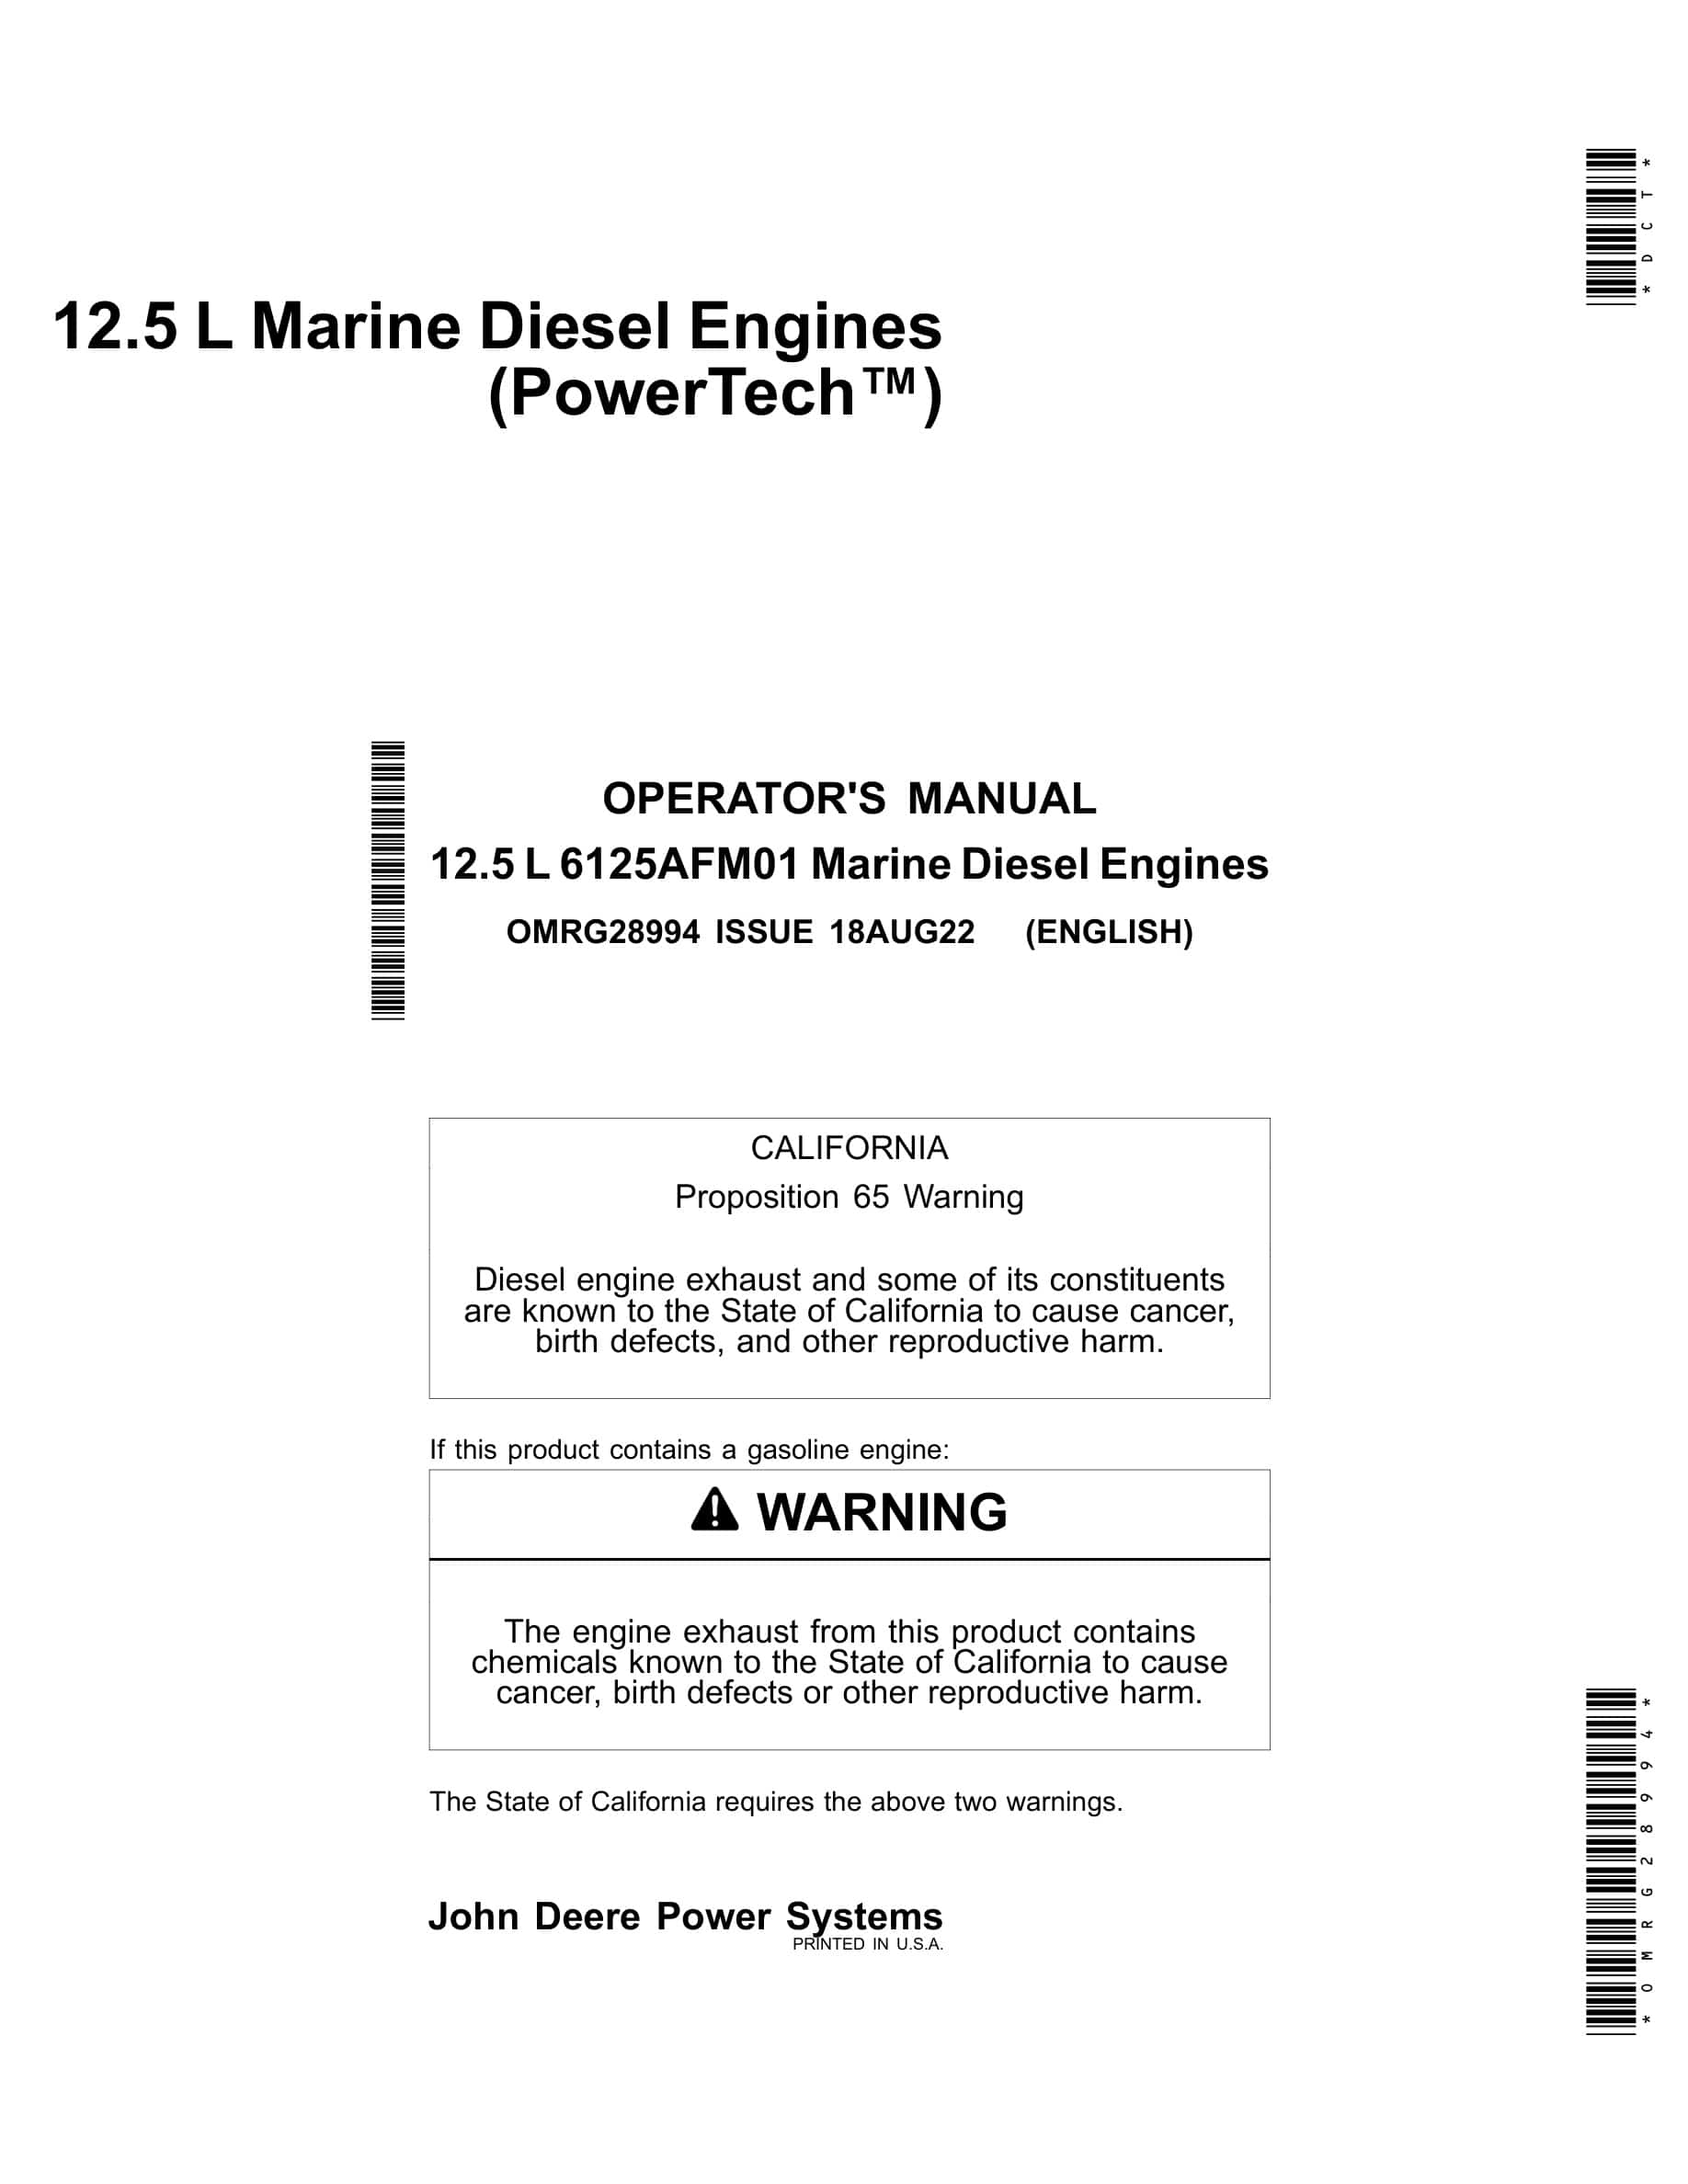 John Deere PowerTech 12.5 L Marine Diesel Engines Operator Manual OMRG28994-1